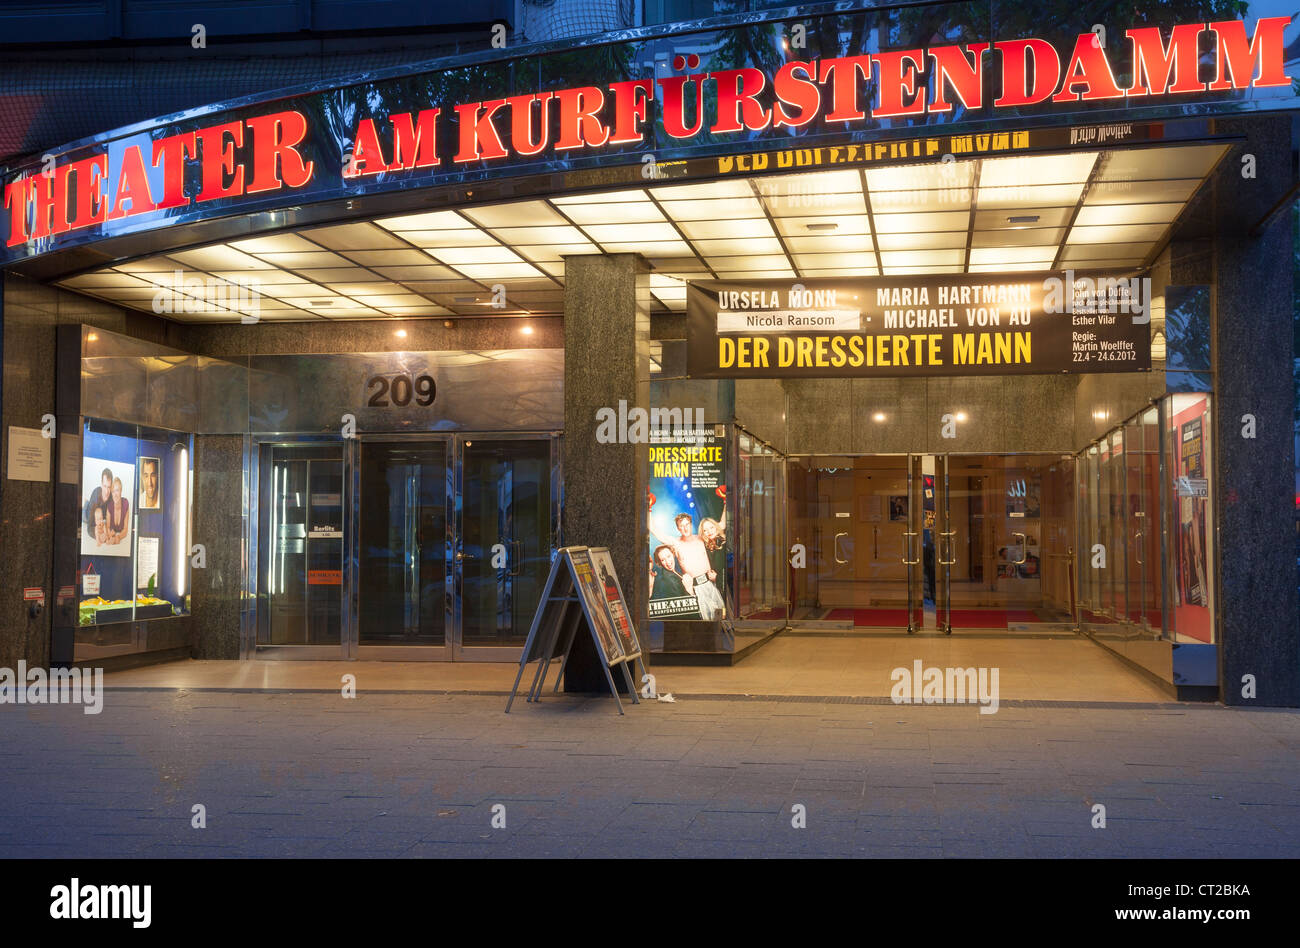 Comedy Theater und am Kurfürstendamm, Berlin, Allemagne Banque D'Images